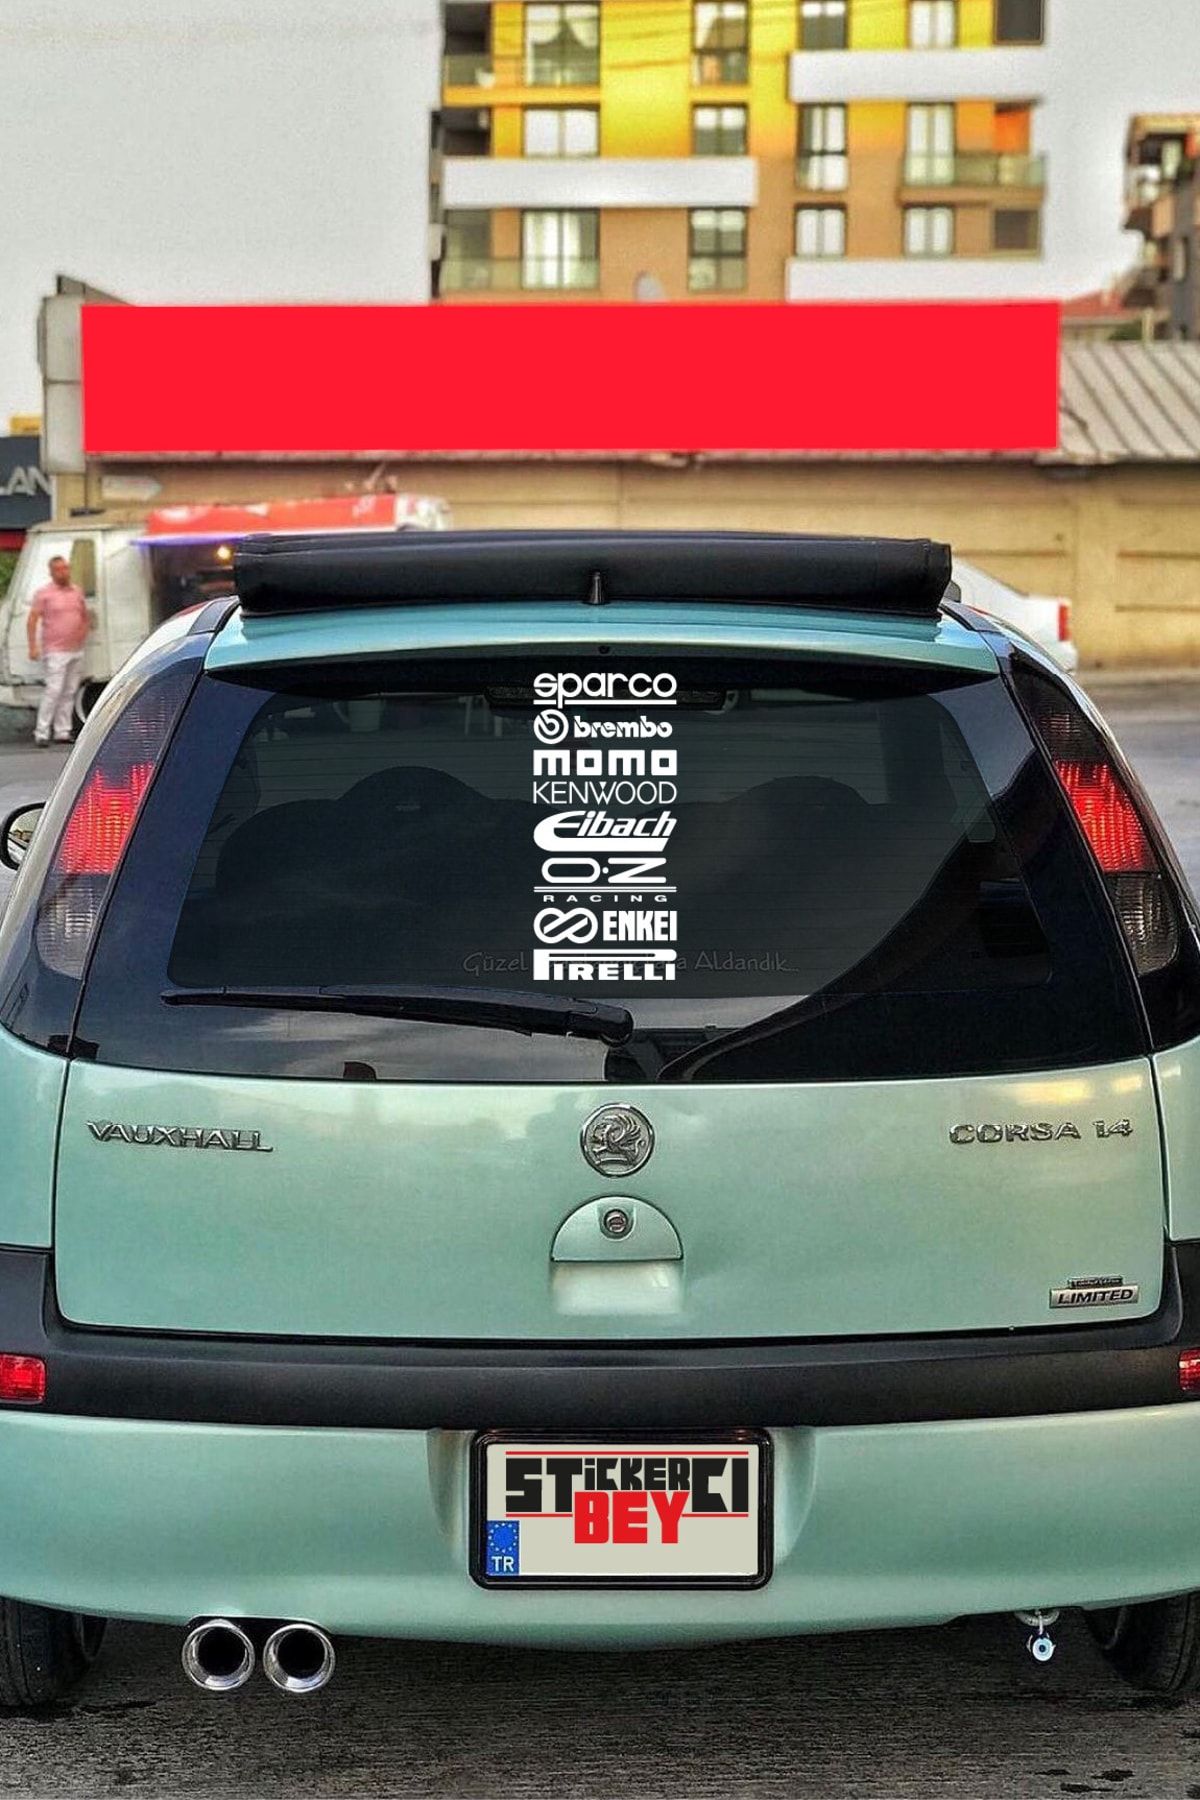 STİCKERCI BEY Sparco Brembo Momo Beyaz Markalar 38*18 Cm Araba Arka Cam  Sticker Seti Araç Arka Cam Etiket Fiyatı, Yorumları - Trendyol